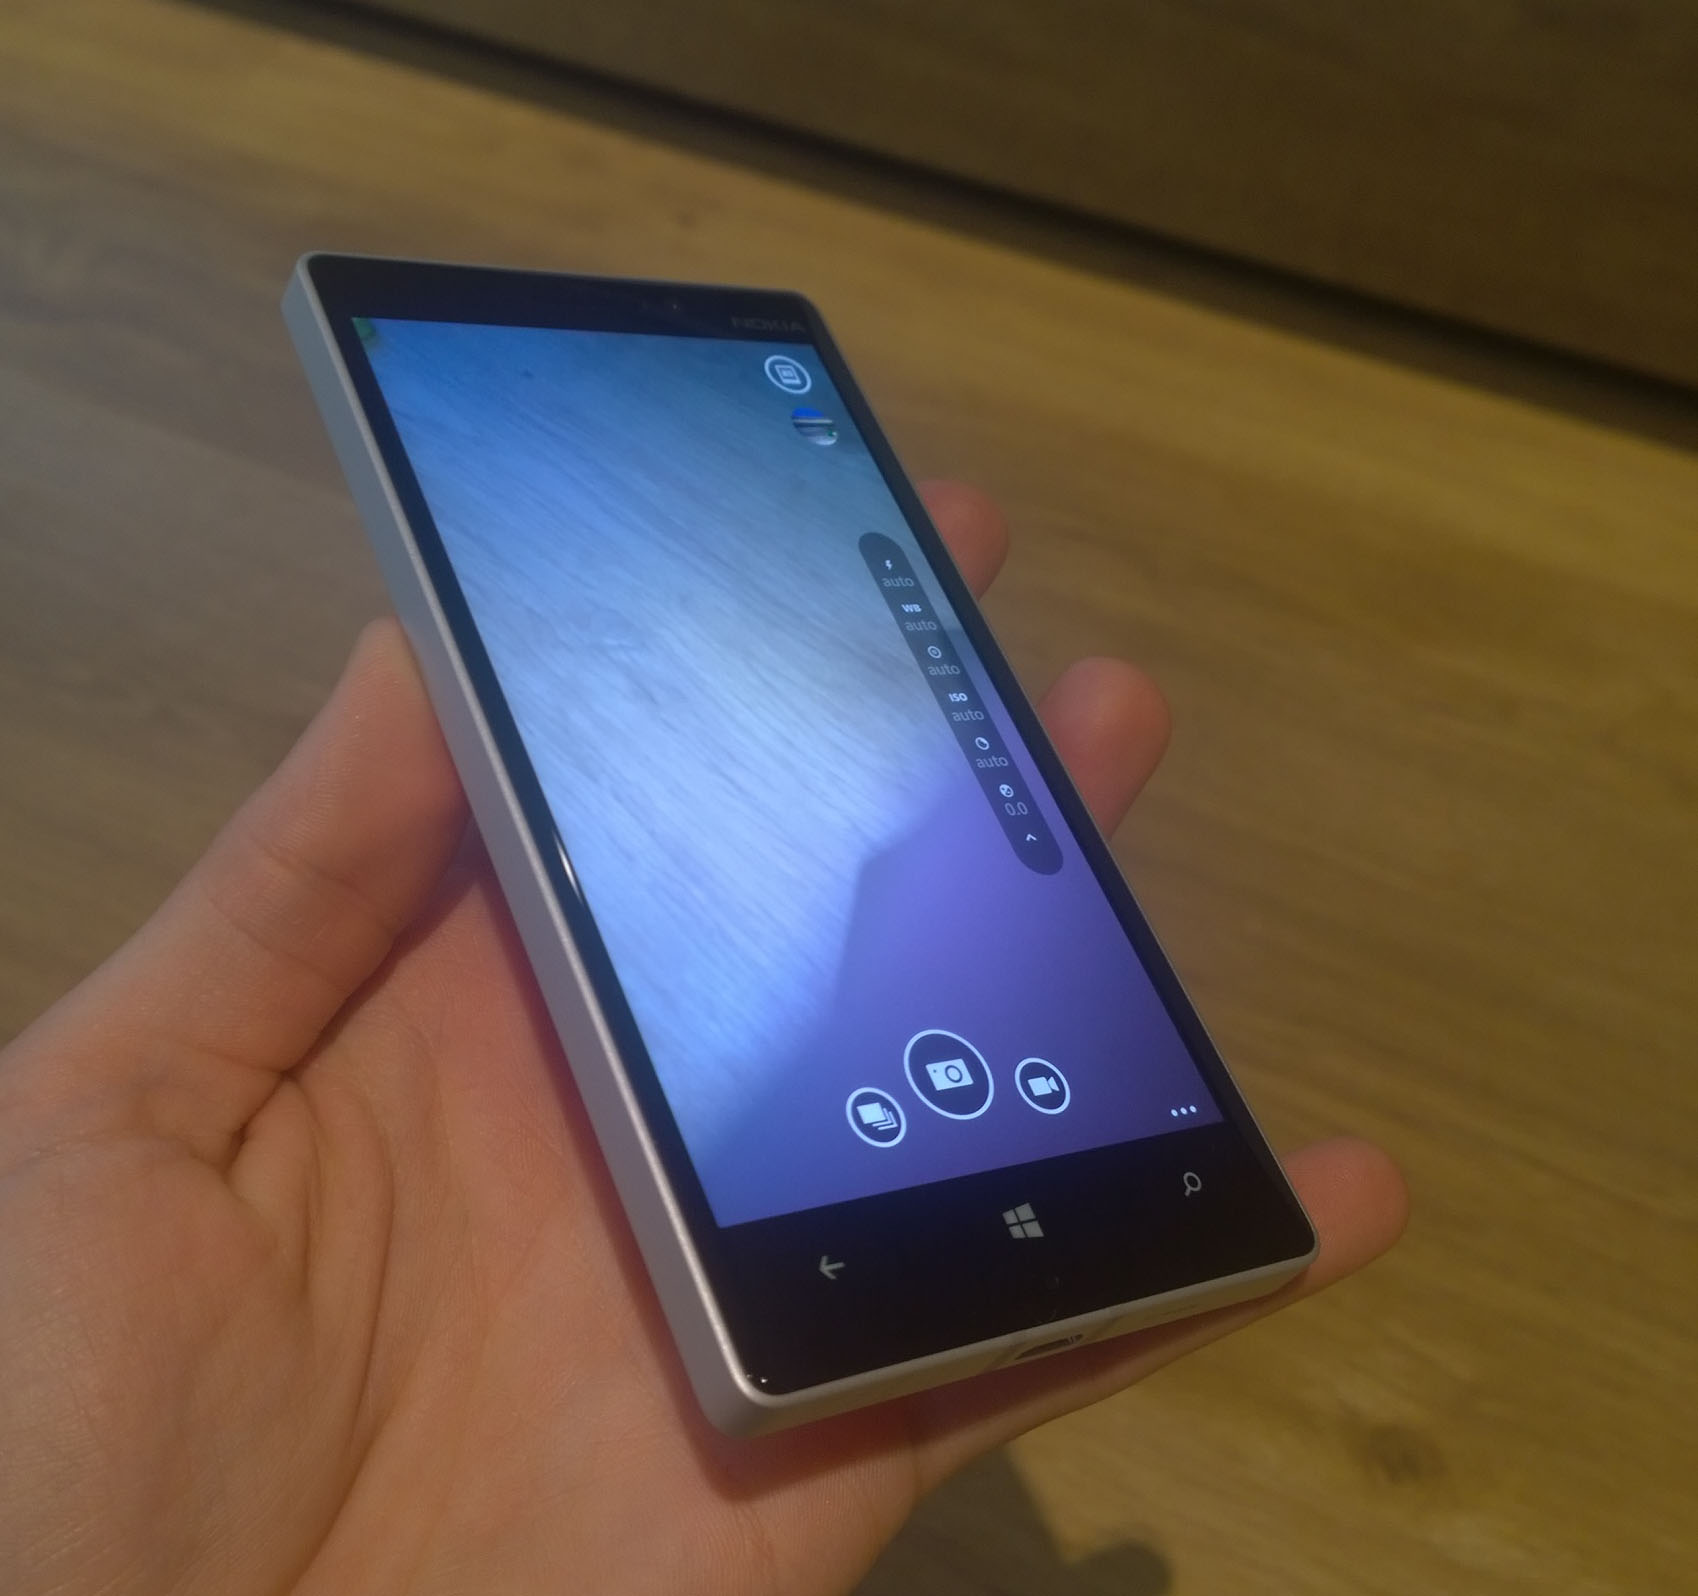 Nokia Lumia 930 recibe la actualización Windows Phone 8.1 Update 1